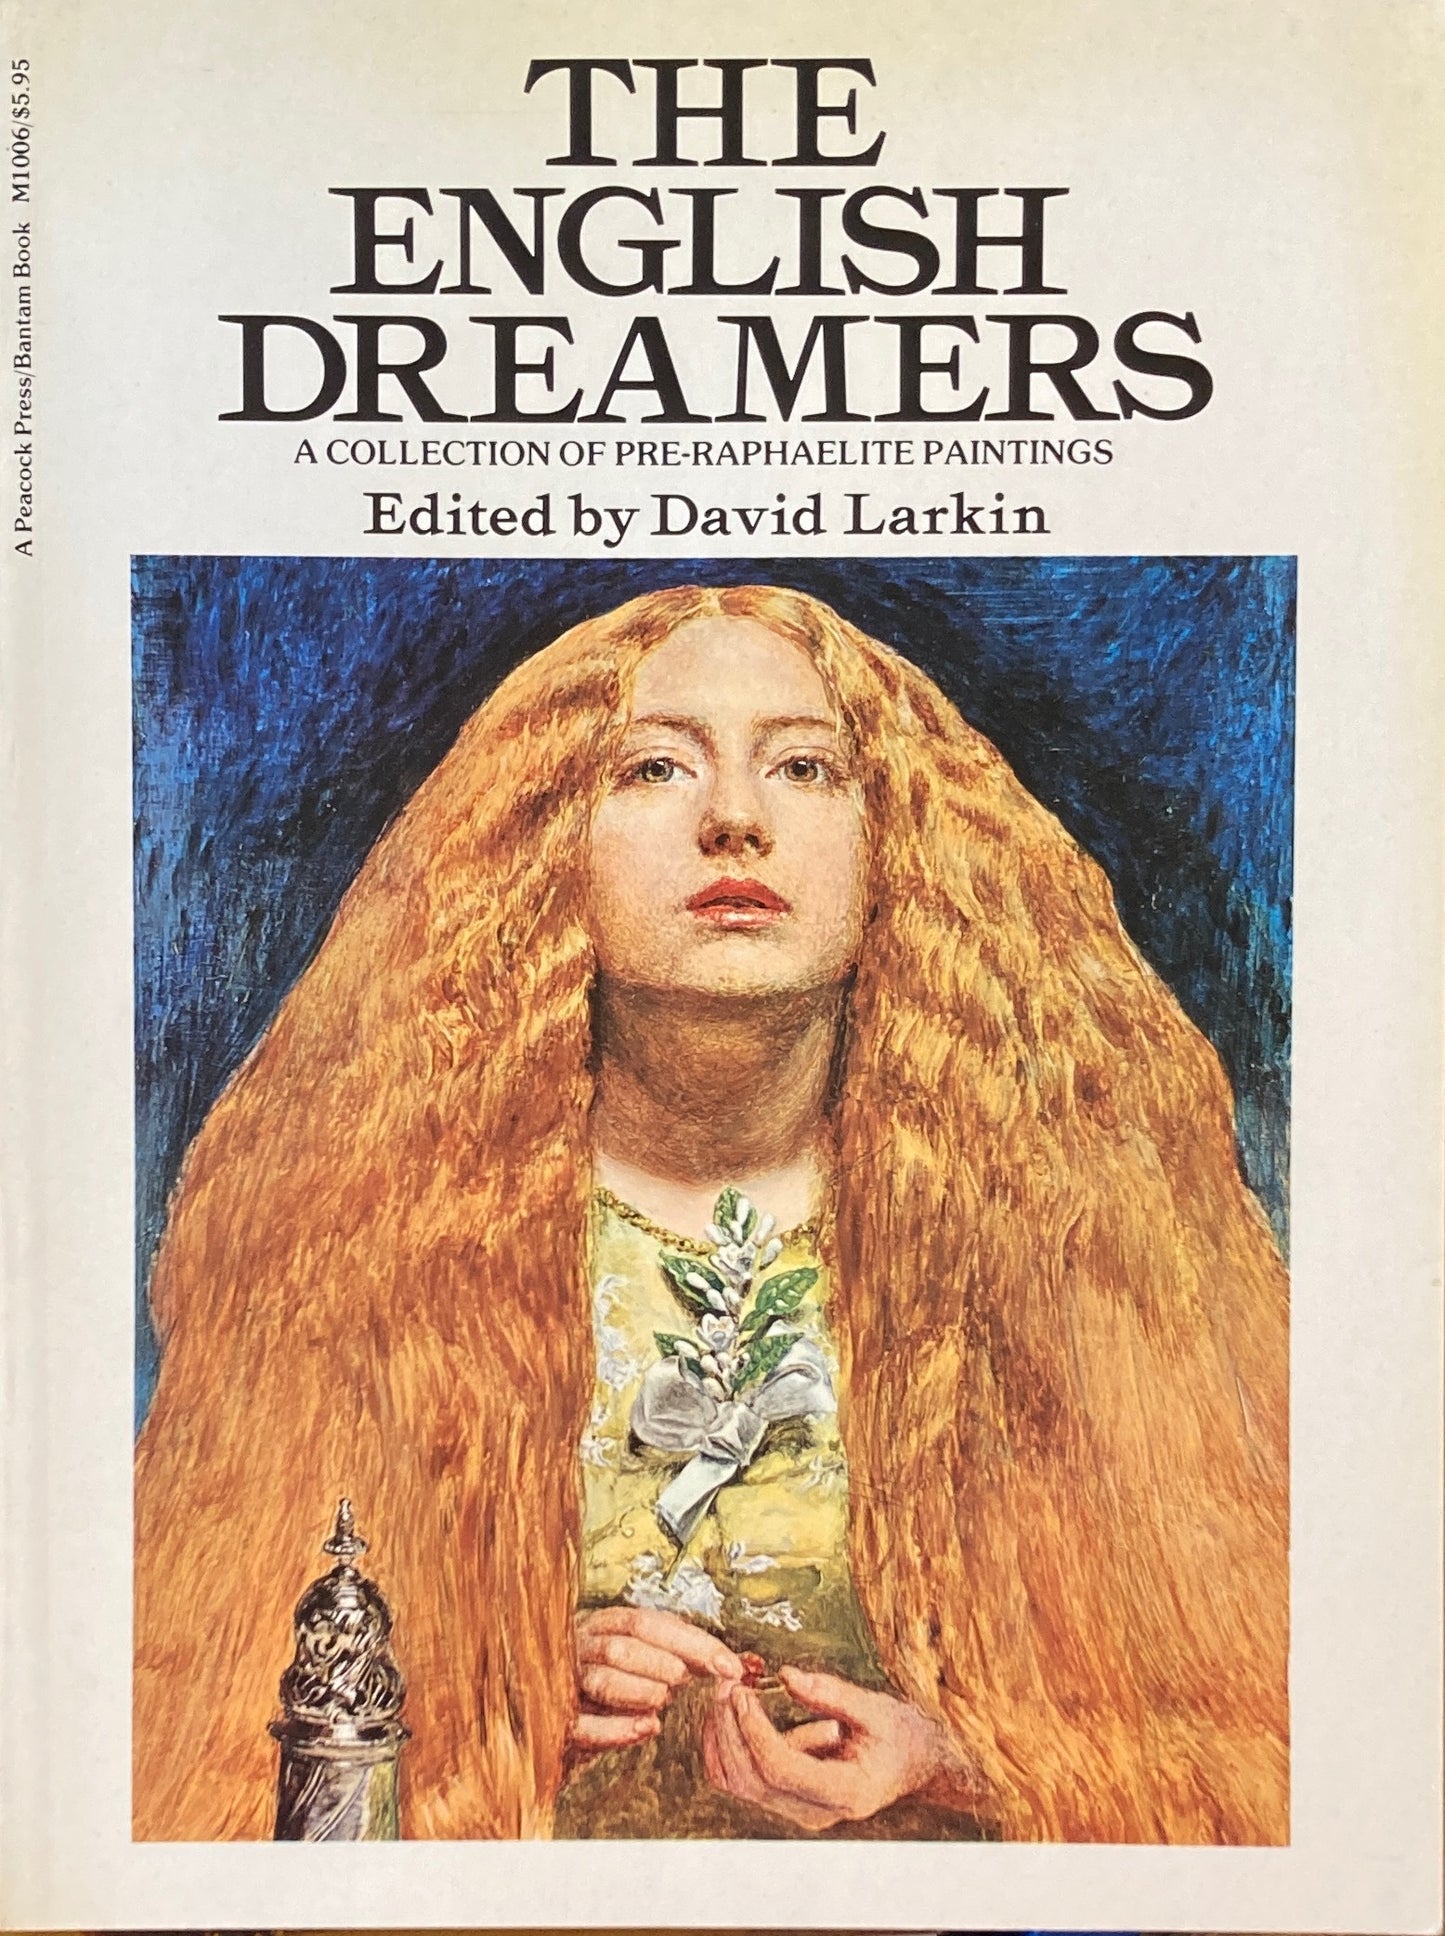 The English Dreamer　David Larkin　